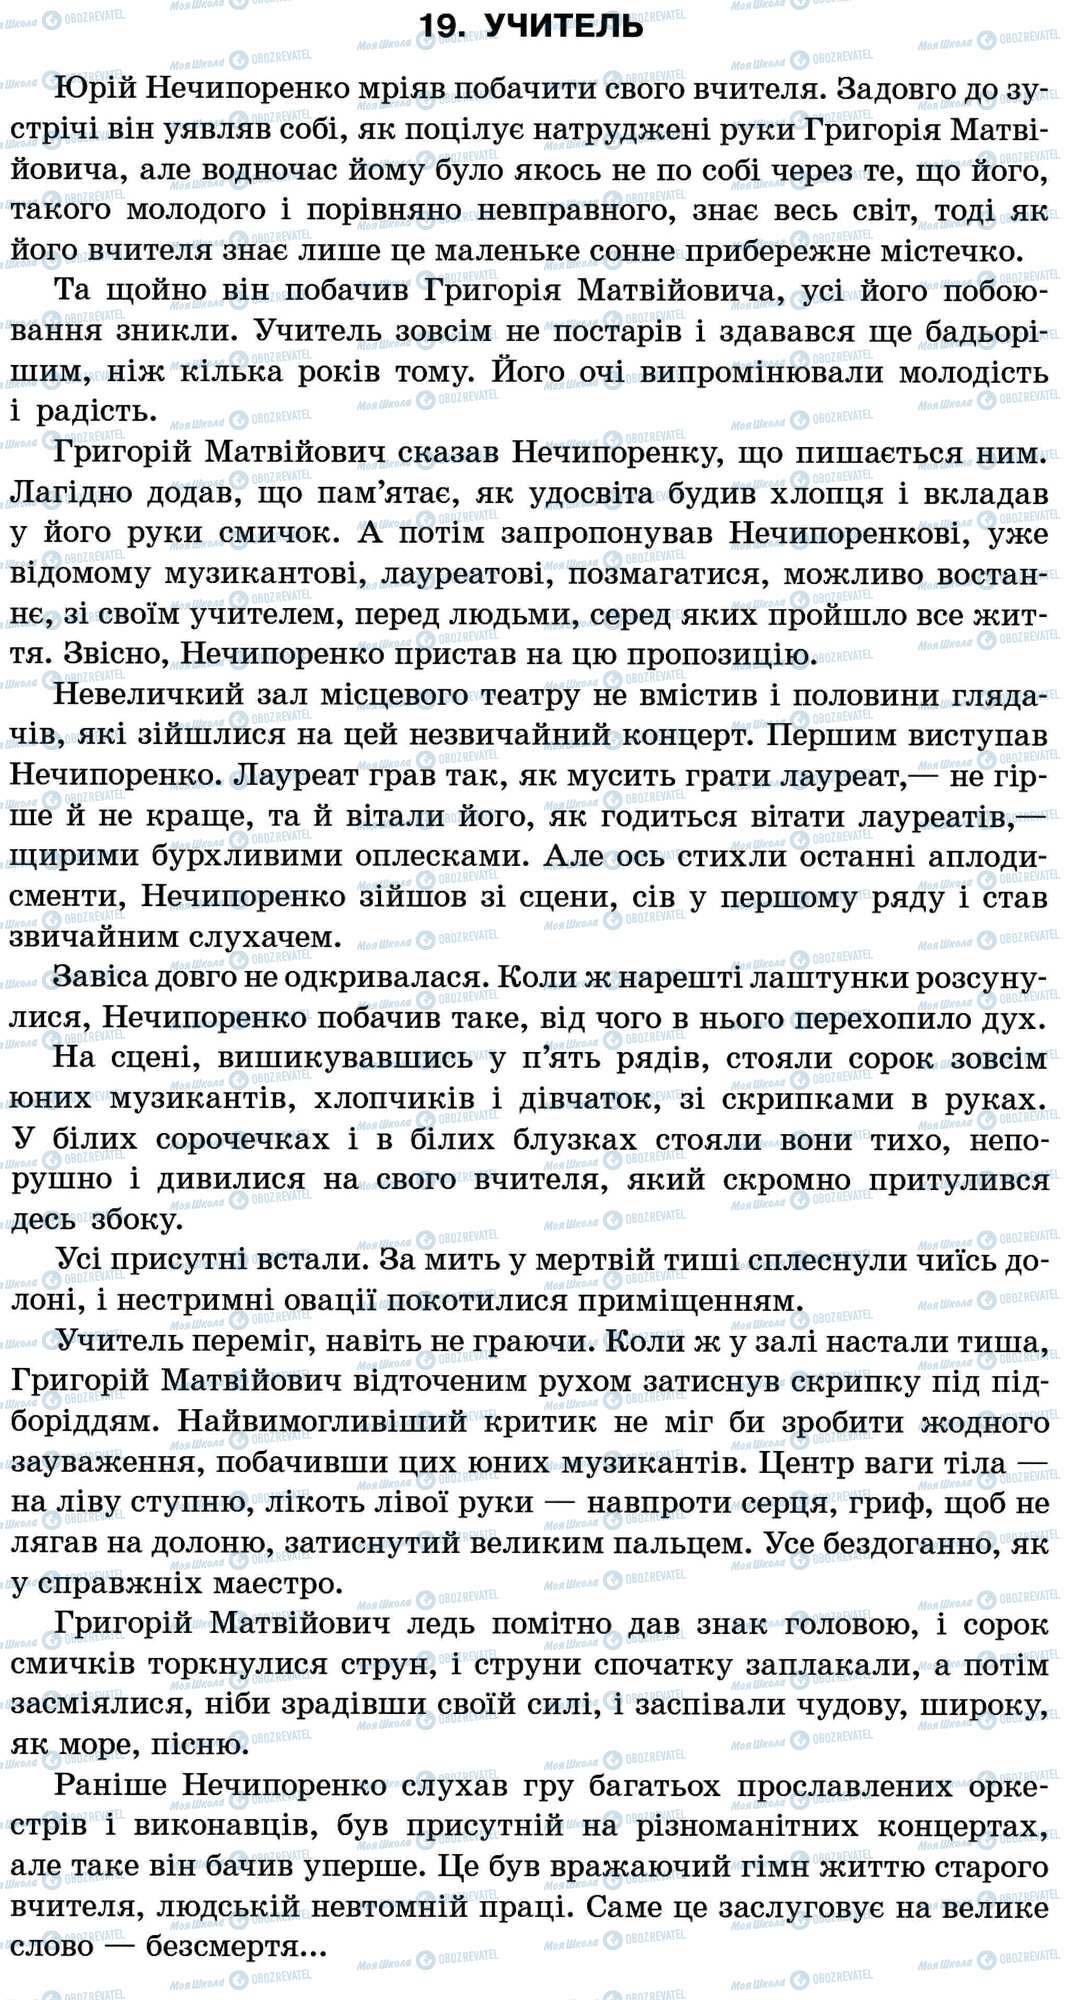 ДПА Укр мова 11 класс страница 19. Учитель